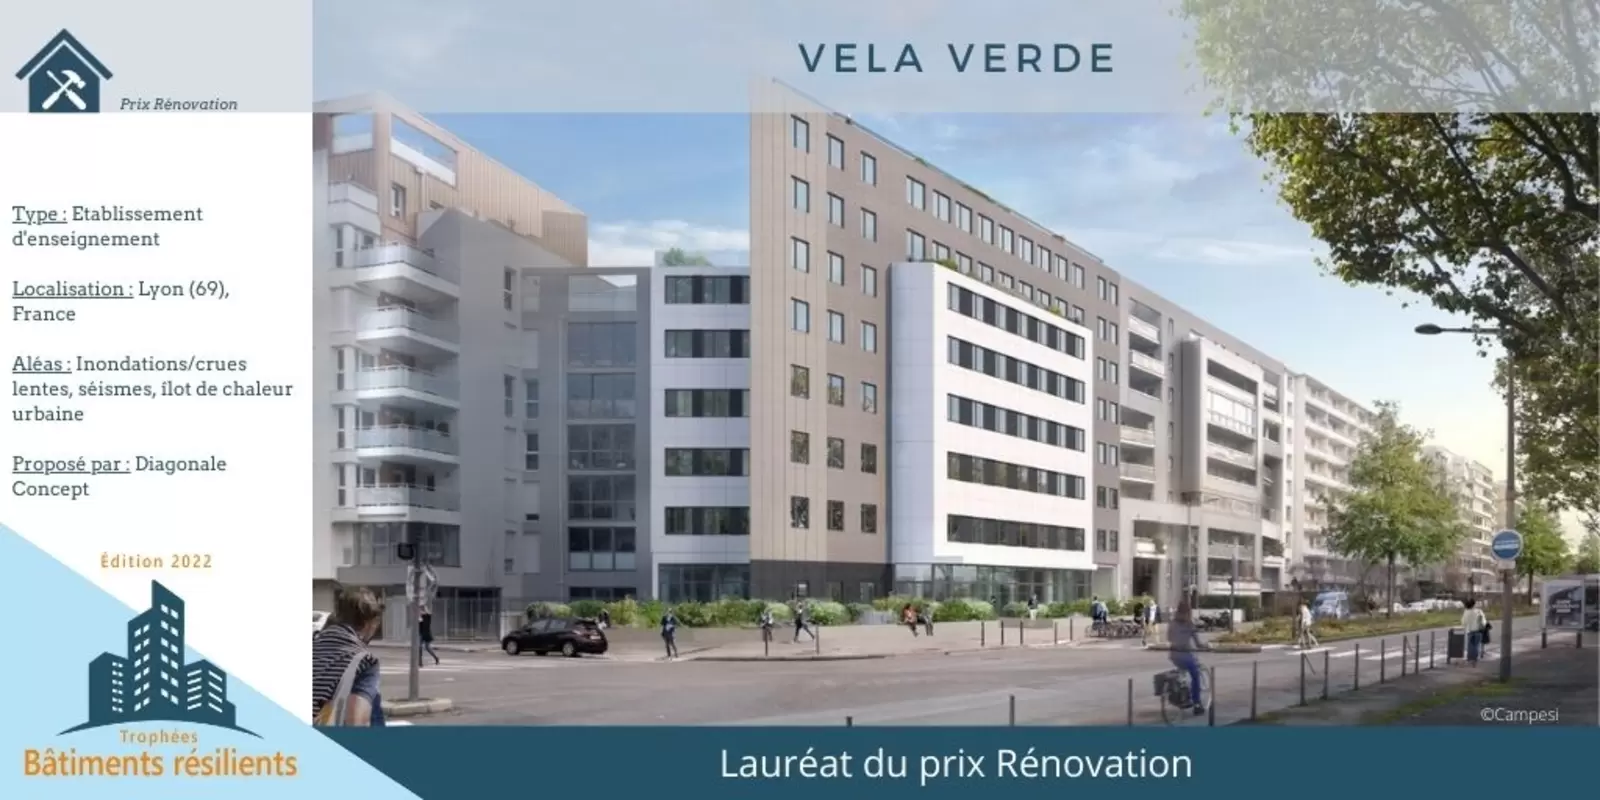 Trophées Bâtiments Résilients : Vela Verde, un modèle de rénovation résiliente